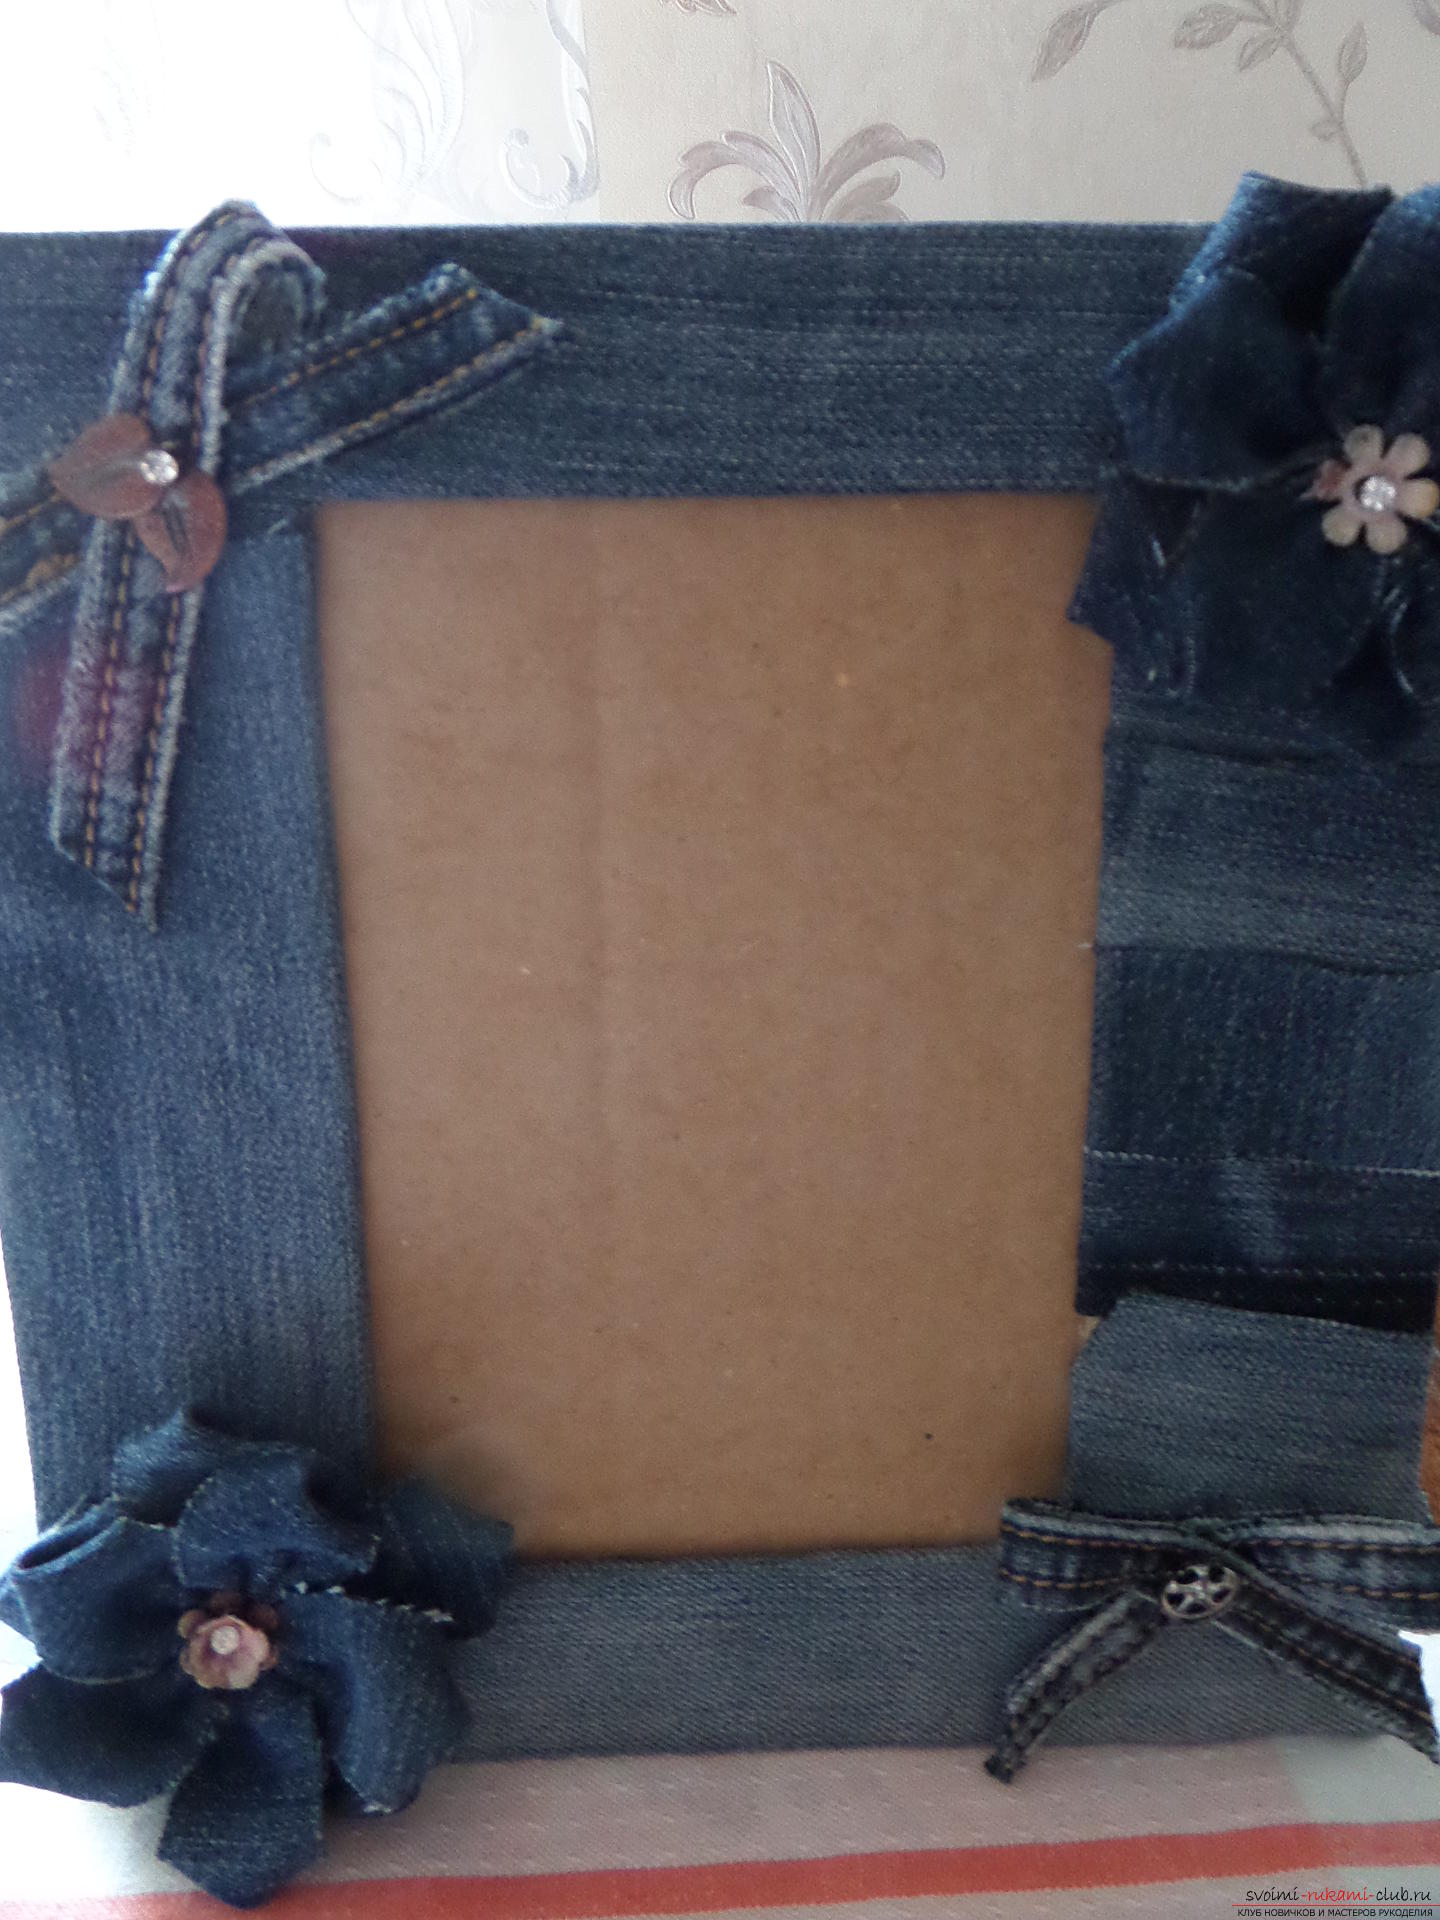 Этот подробный мастер-класс поделки из ткани своими руками научит как сделать фоторамку из джинсы.. Фото №1